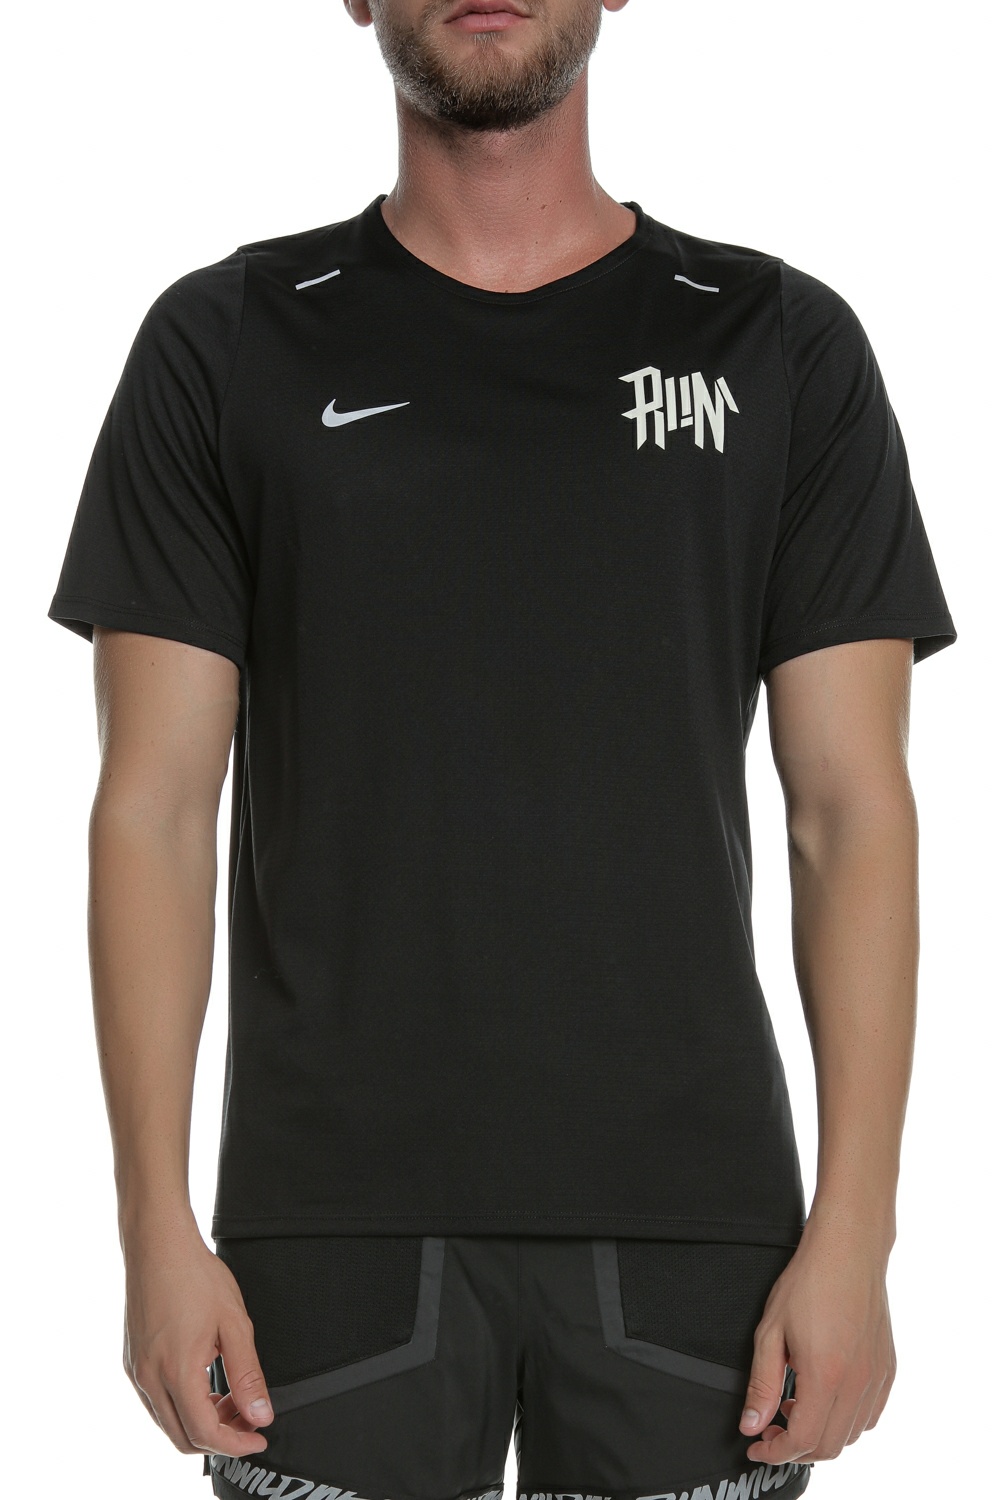 Ανδρικά/Ρούχα/Αθλητικά/T-shirt NIKE - Ανδρική μπλούζα NIKE DF BRTH RISE 365 WR μαύρη